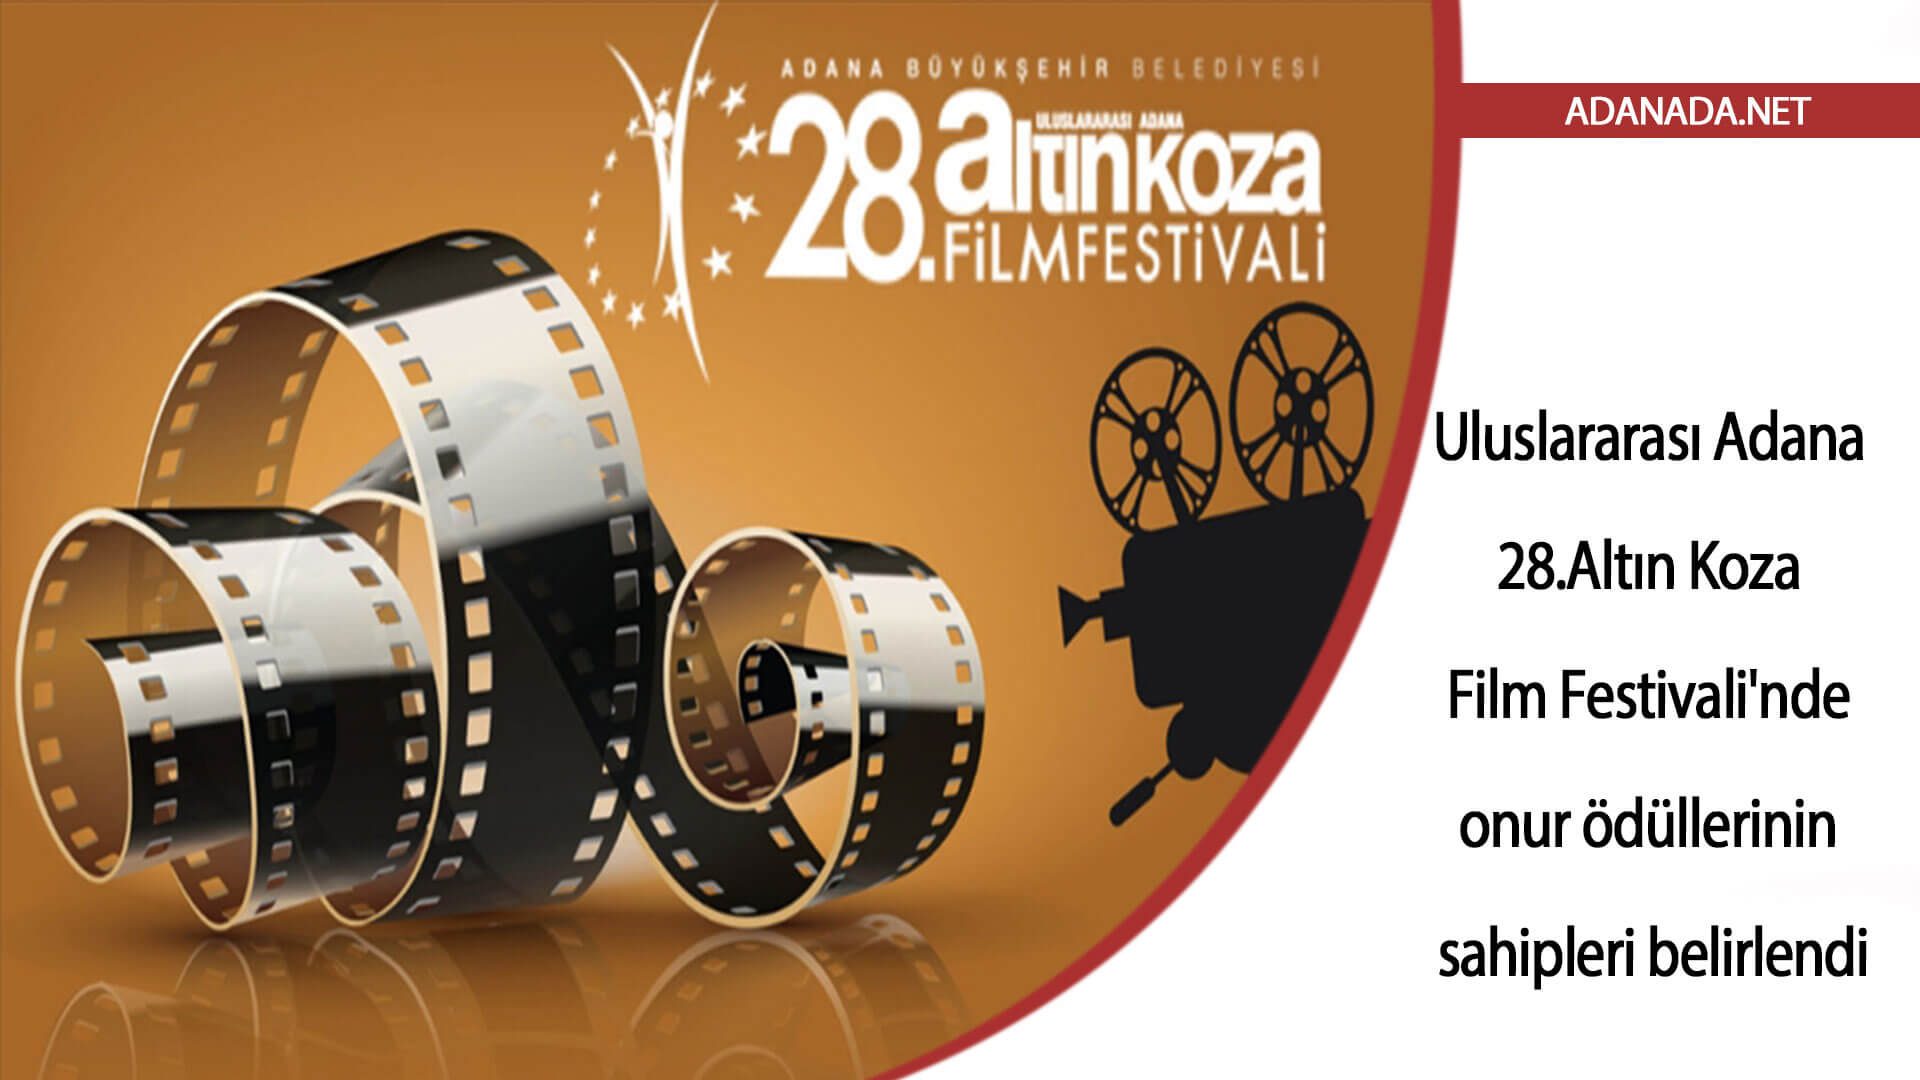 Uluslararası Adana Altın Koza Film Festivali’nde onur ödüllerinin sahipleri belirlendi